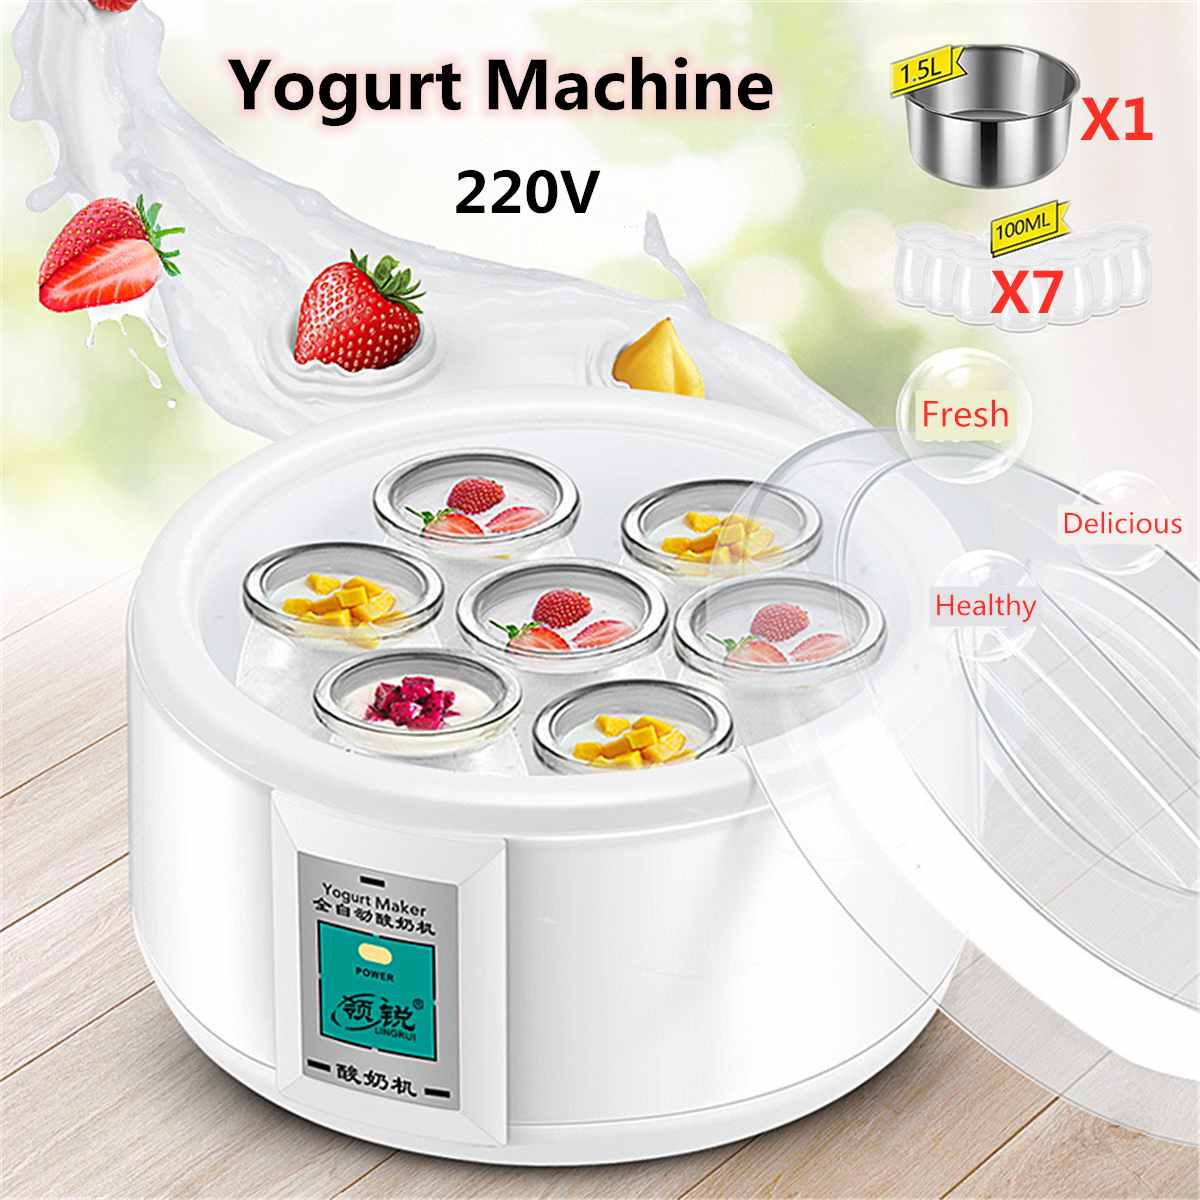 1.5L Elektrische Yoghurt Maker Yoghurt Diy Tool Keukenapparatuur Automatische Yoghurt Maker Met 7 Potten Liner Materiaal Roestvrij Staal